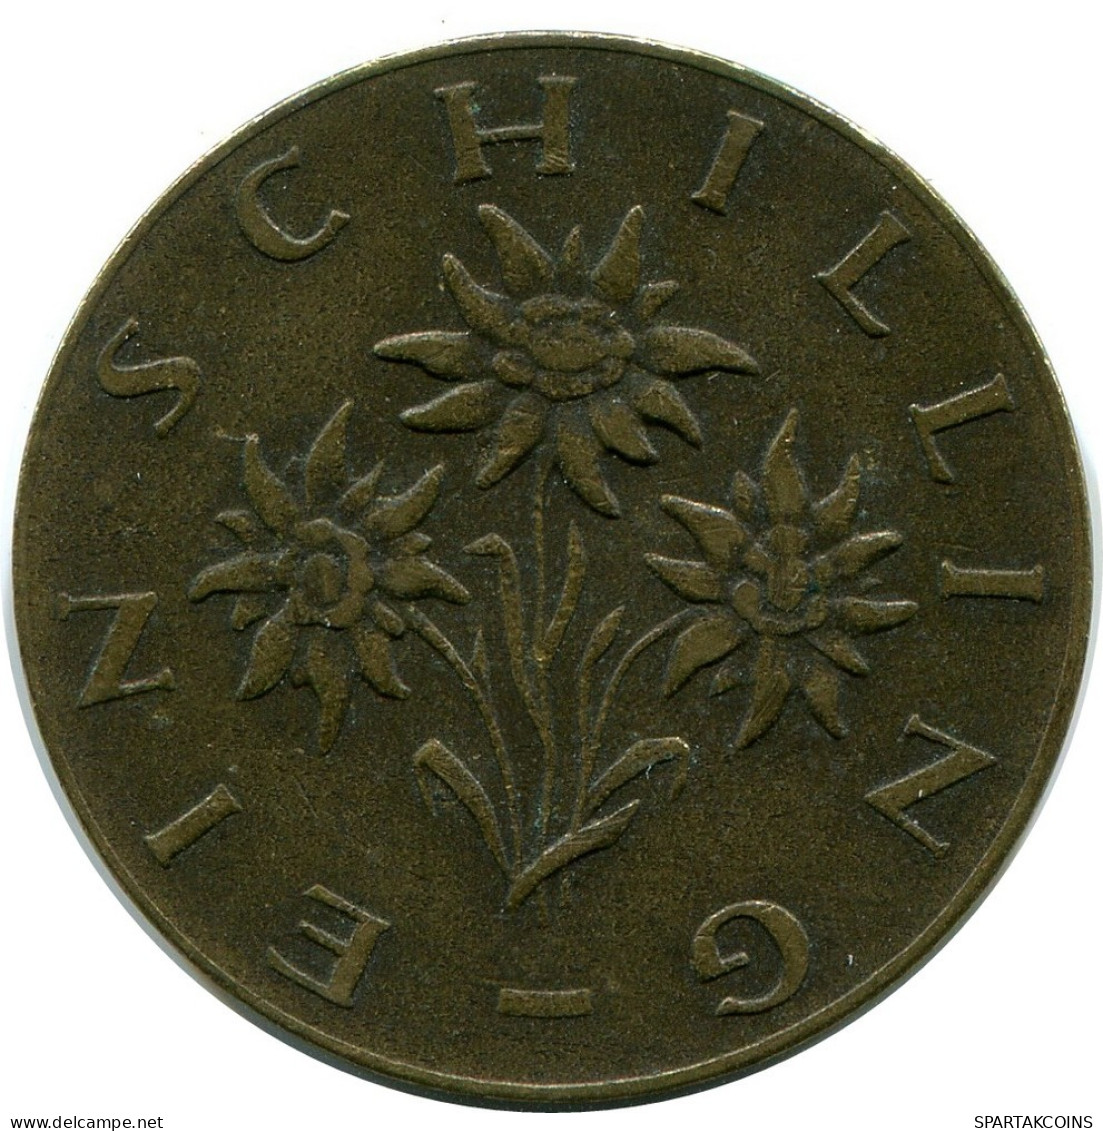 1 SCHILLING 1960 AUSTRIA Moneda #AZ566.E.A - Austria